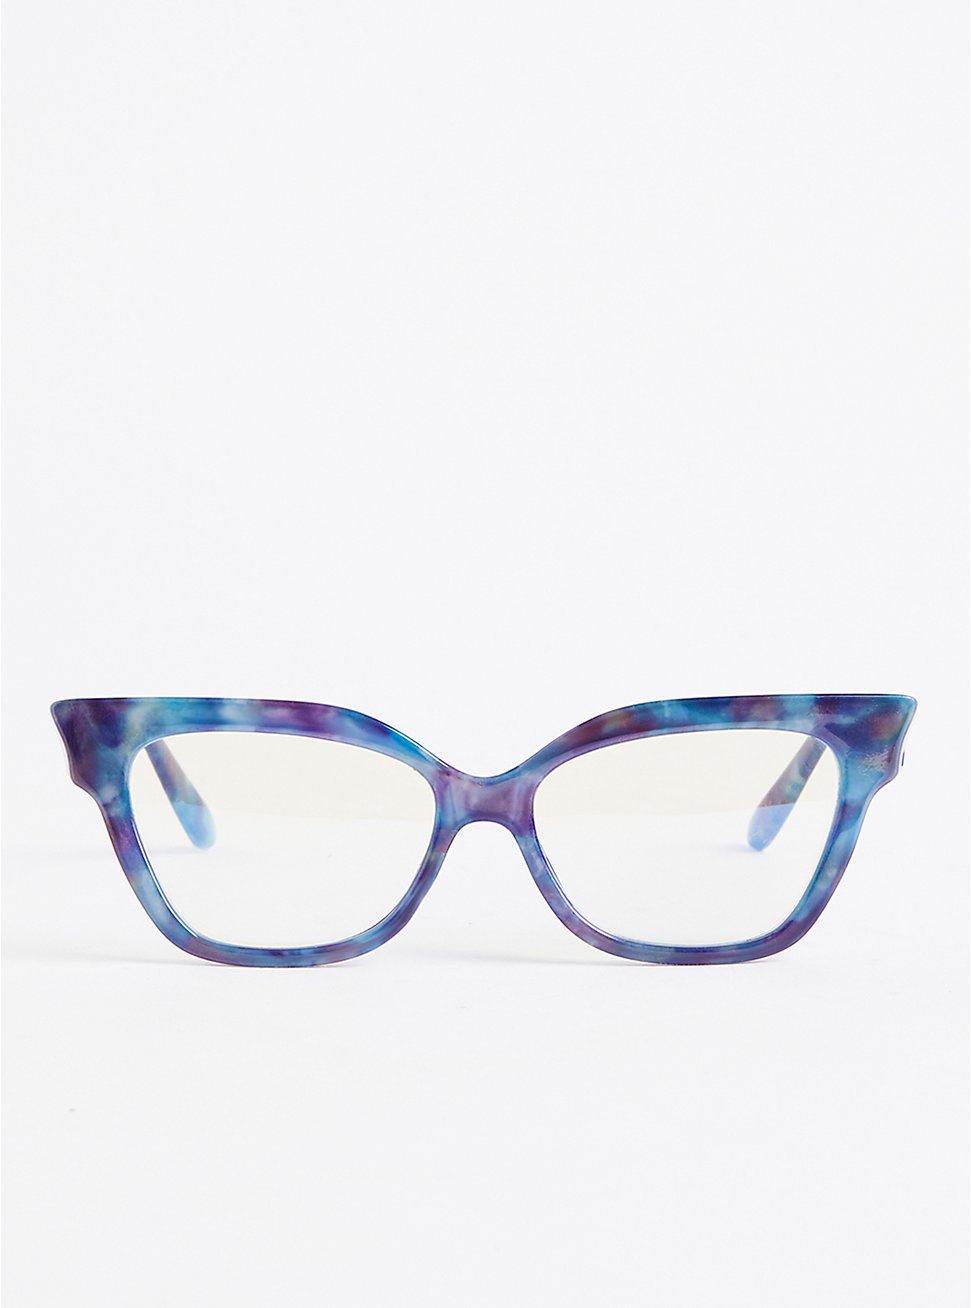 Plus Size Blue Light Glasses - Multi Blue, , hi-res